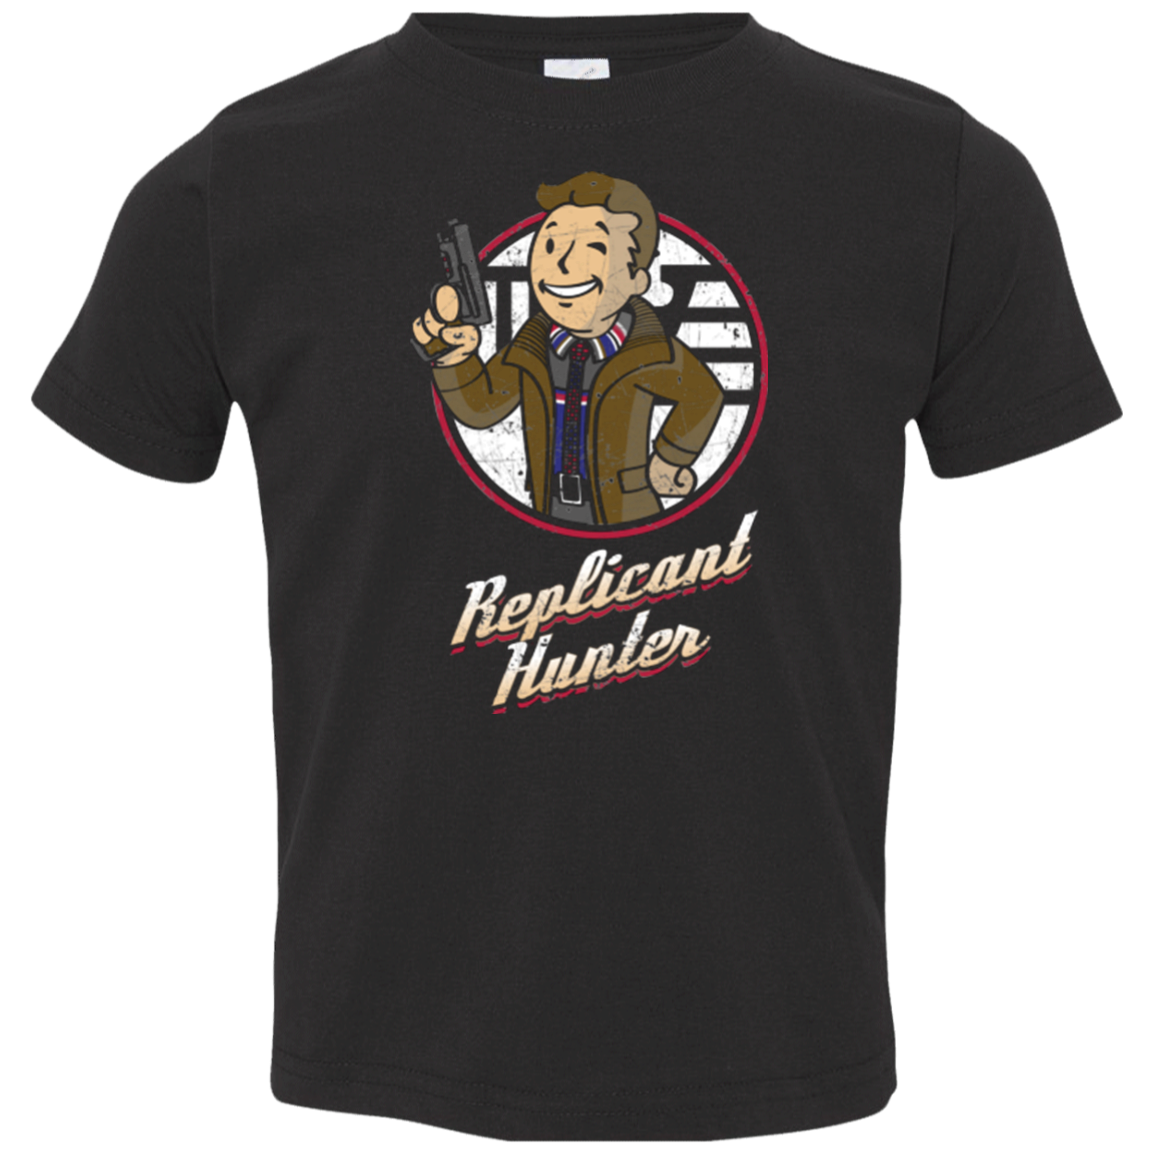 Replicant Hunter Toddler Premium T-Shirt